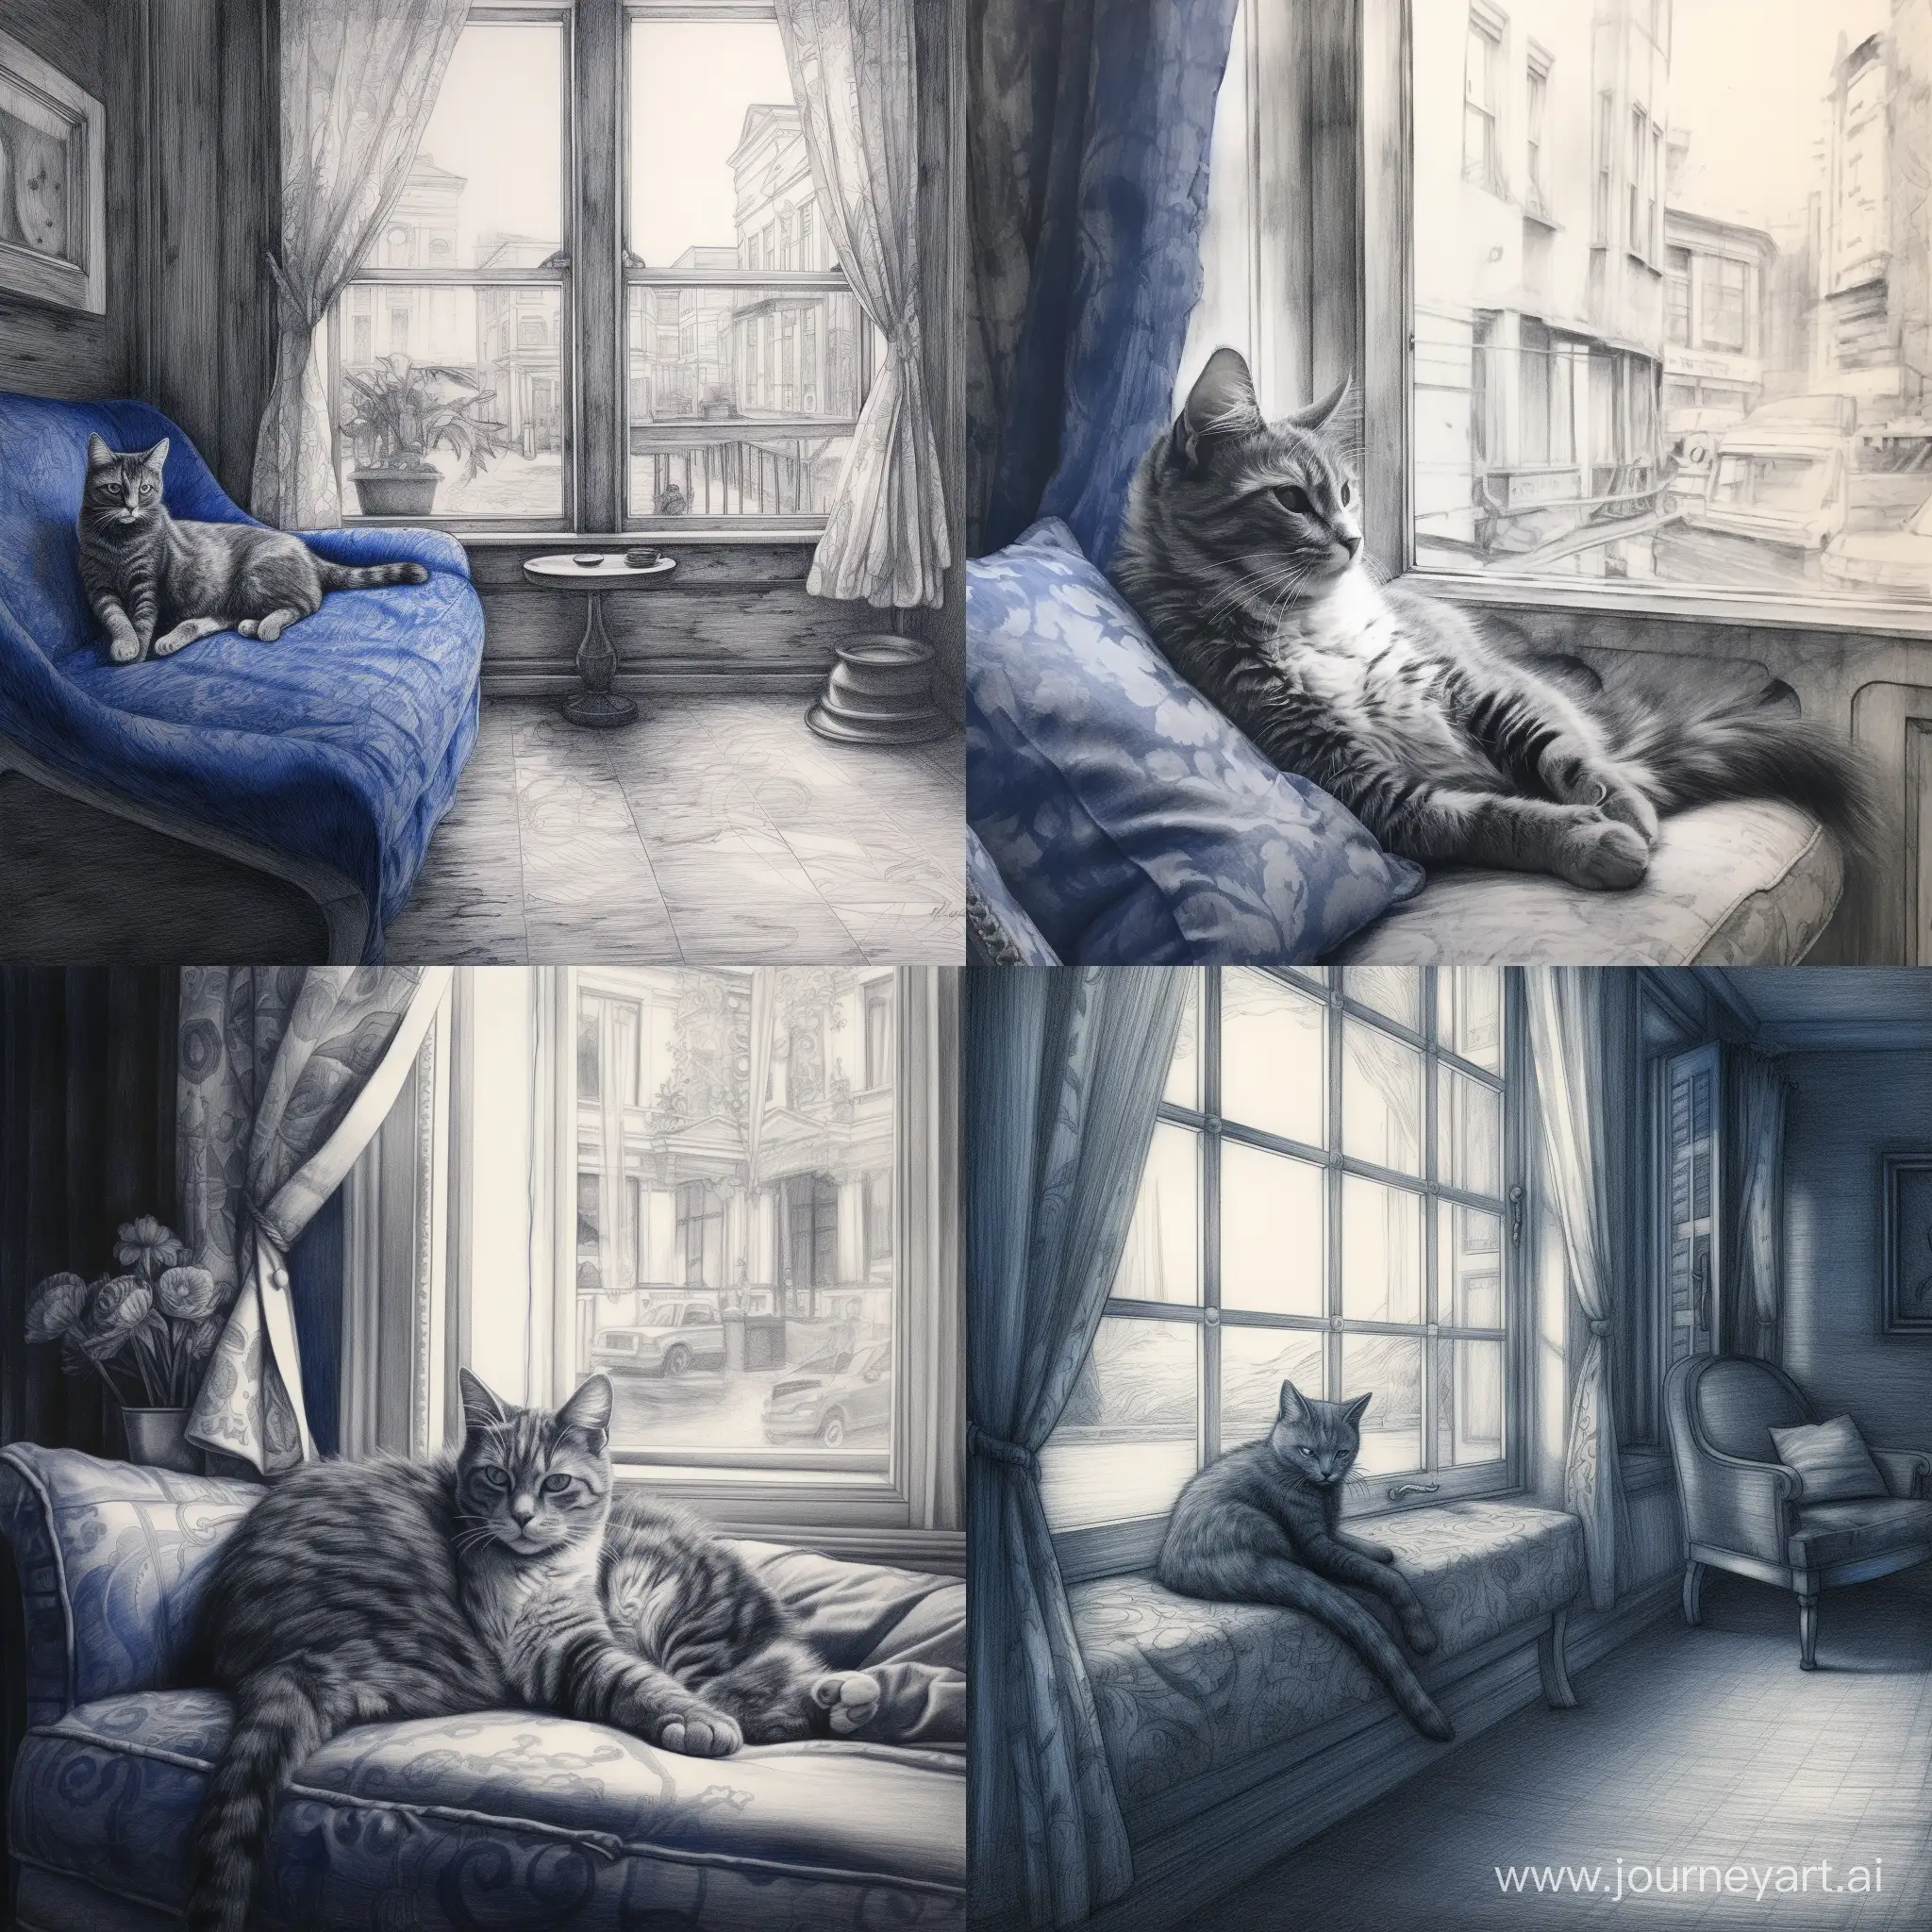 Рисунок карандашом, голубая кошка с черными узорами лениво разлеглась на фоне окна, мягкий свет проникает через окна отбрасывая блики на кошку